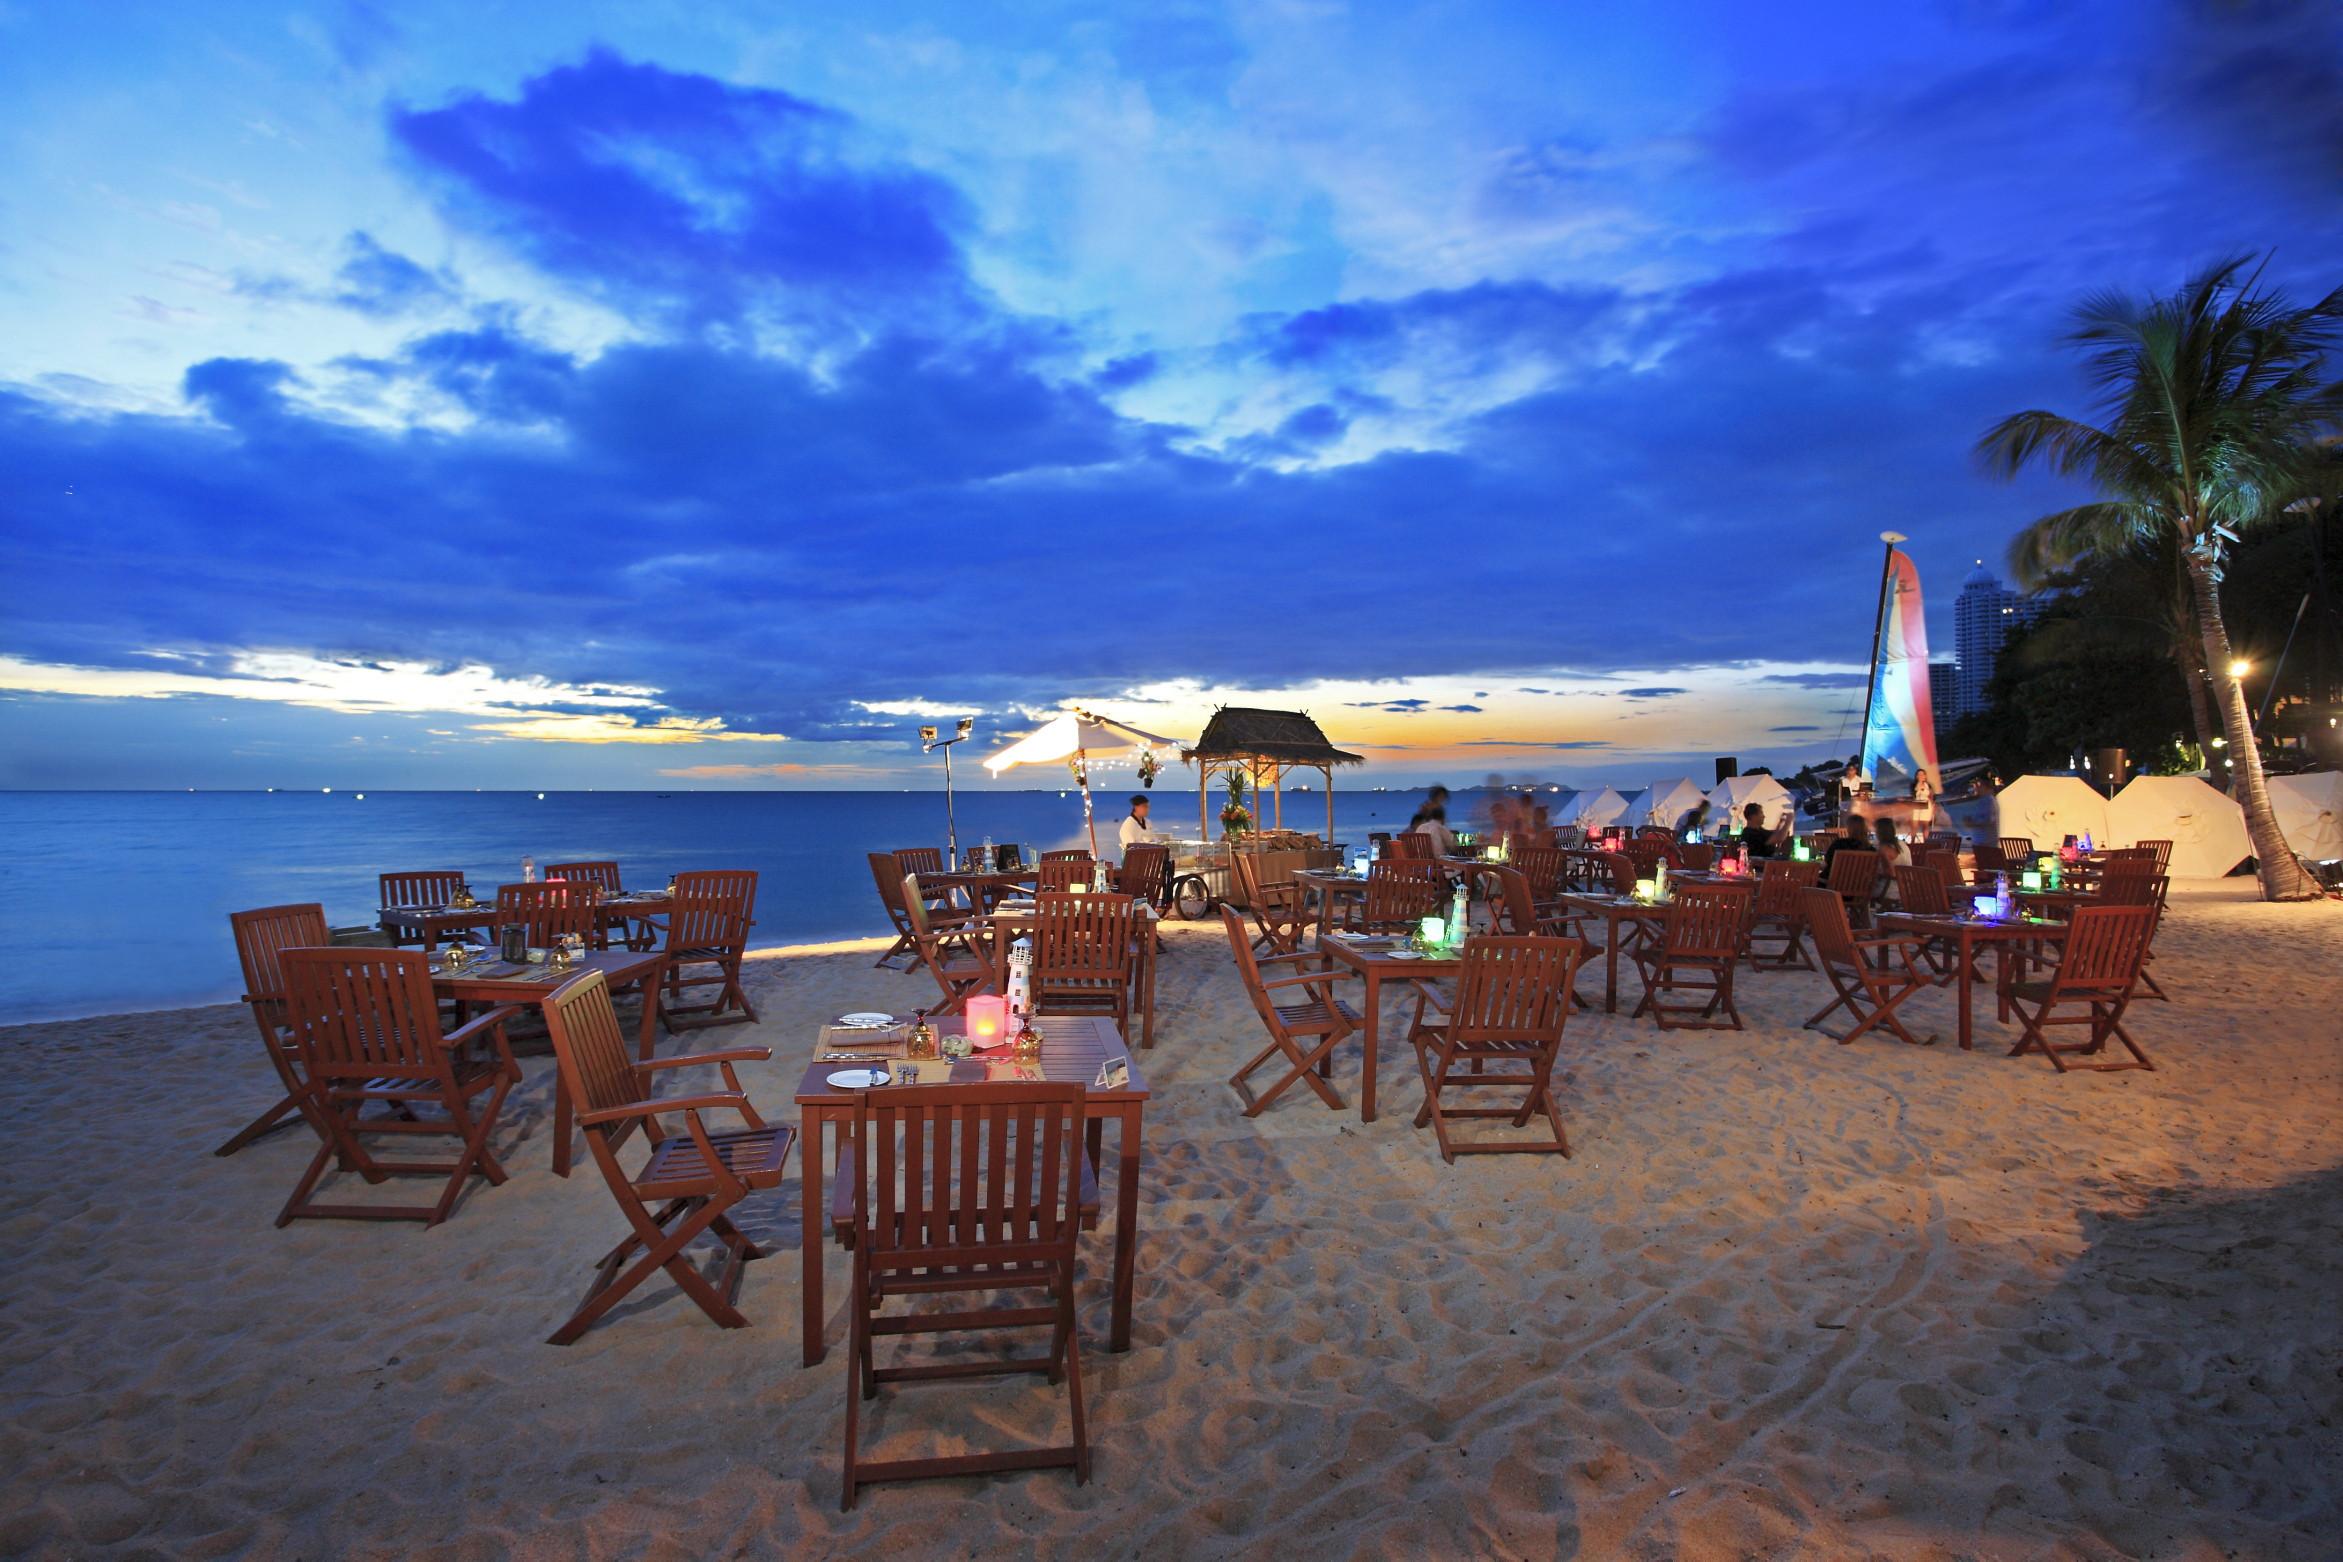 Купить путевку в паттайю. Тайланд Паттайя. Centara Grand Тайланд. Centara Grand Mirage Beach Resort Pattaya. Таиланд курорт Паттайя.